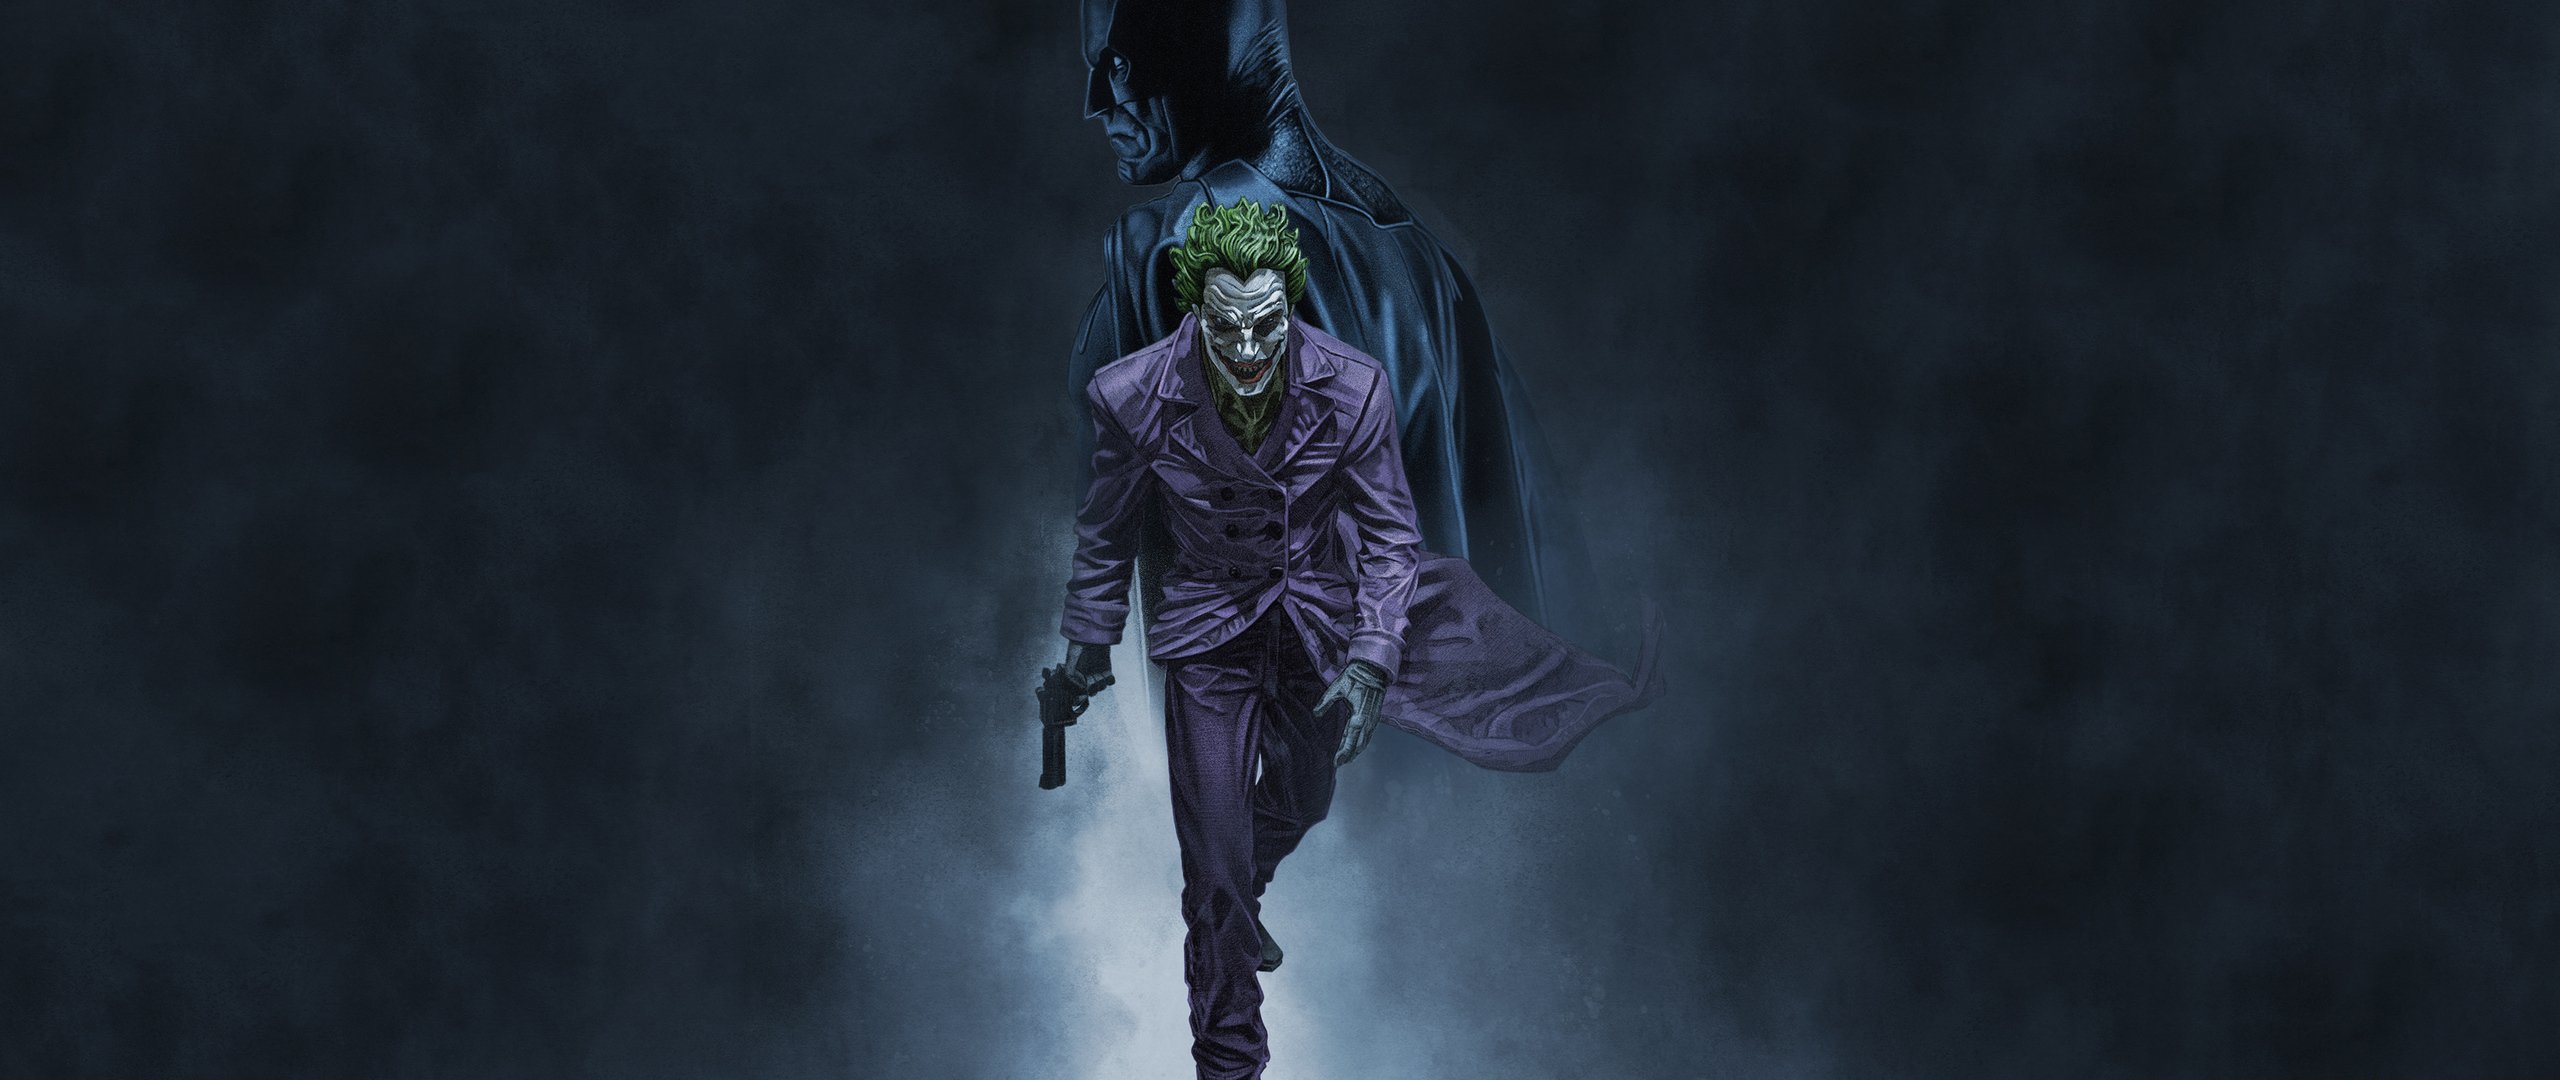 joker-walking-batman-3j-2560x1080.jpg